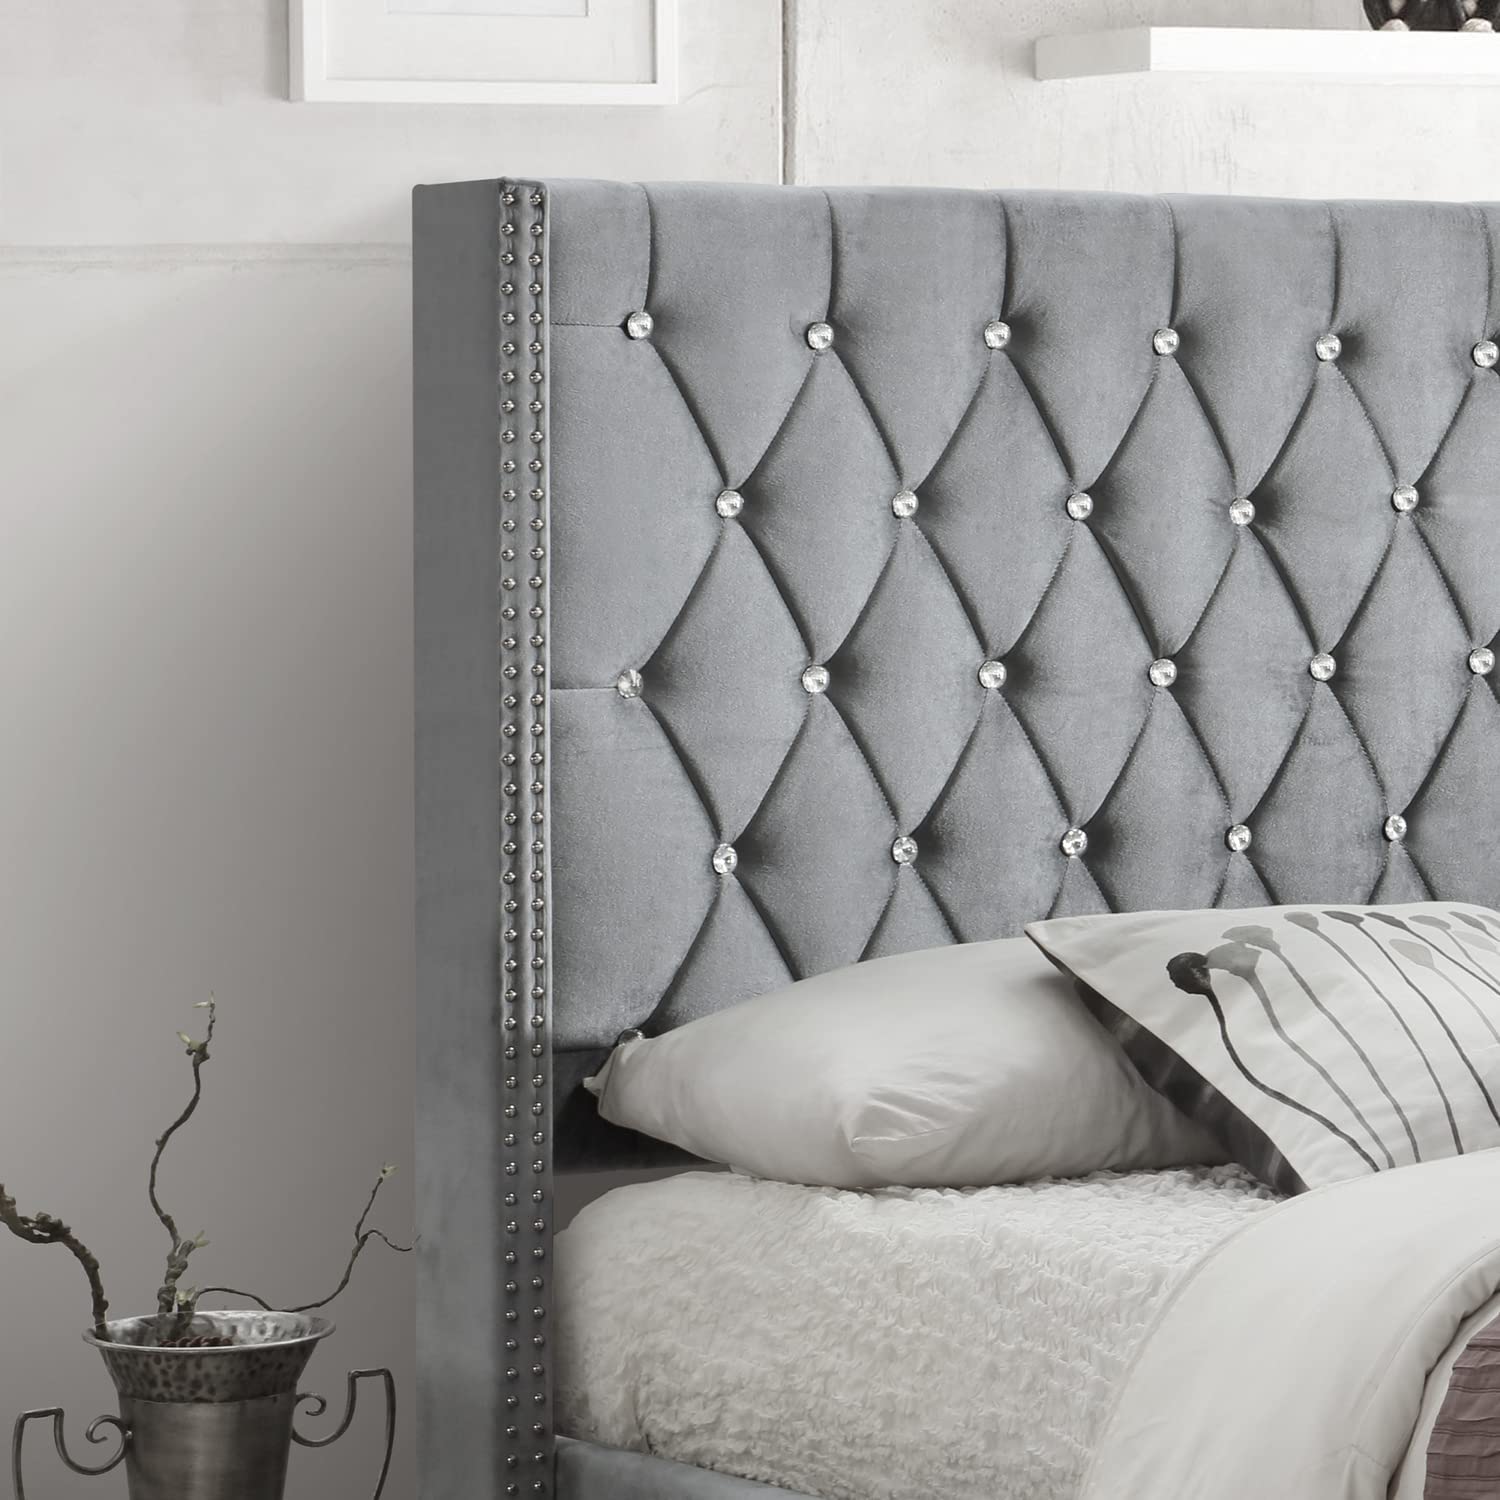 Better Home Products Alexa Velvet Upholstered Full Platform Bed in Gray